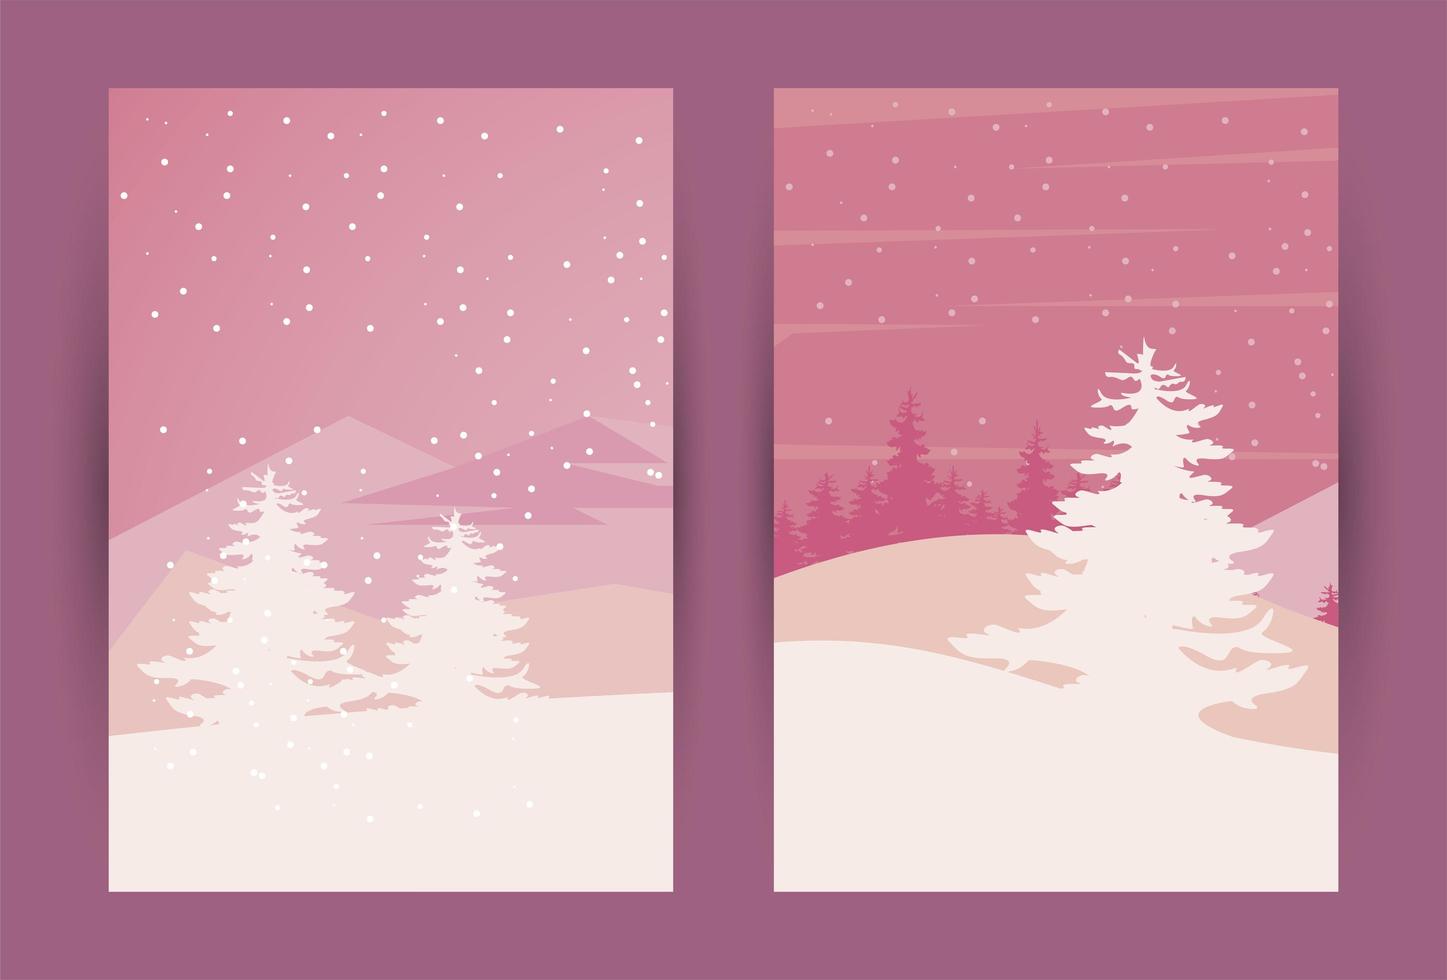 bellezza due scene di paesaggi invernali rosa vettore